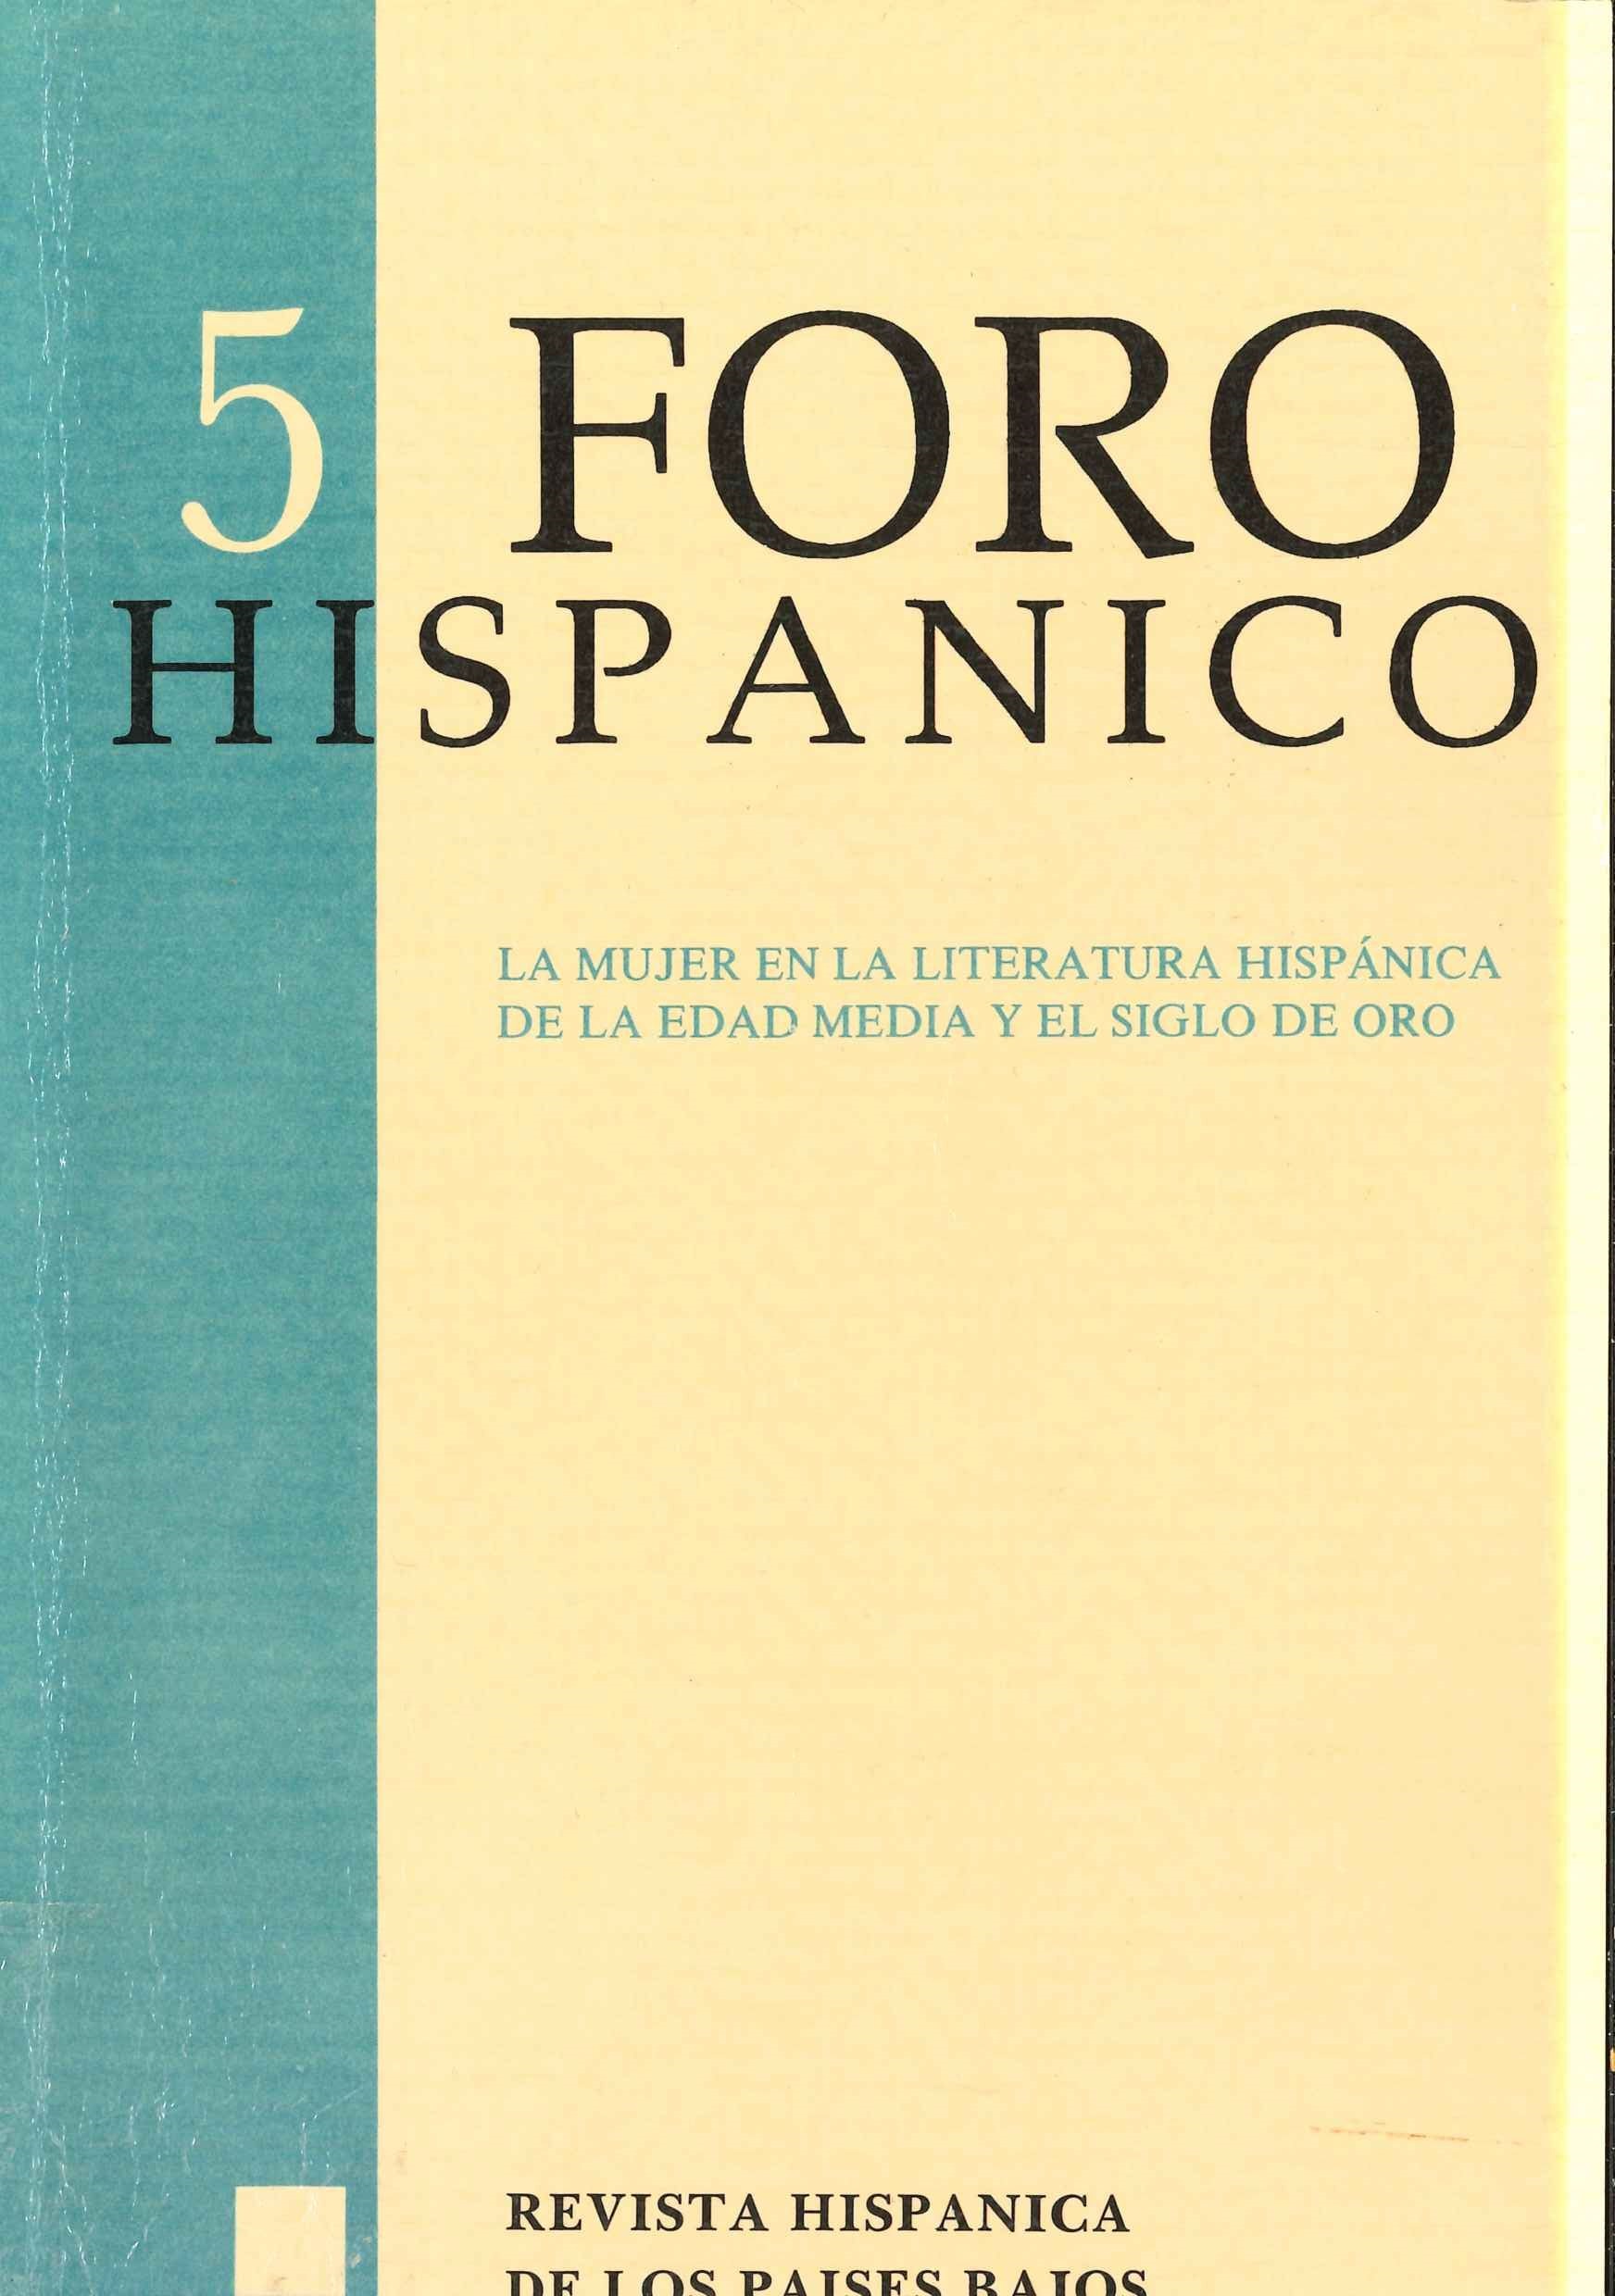 Imagen de portada del libro La mujer en la literatura hispánica de la Edad Media y el Siglo de Oro